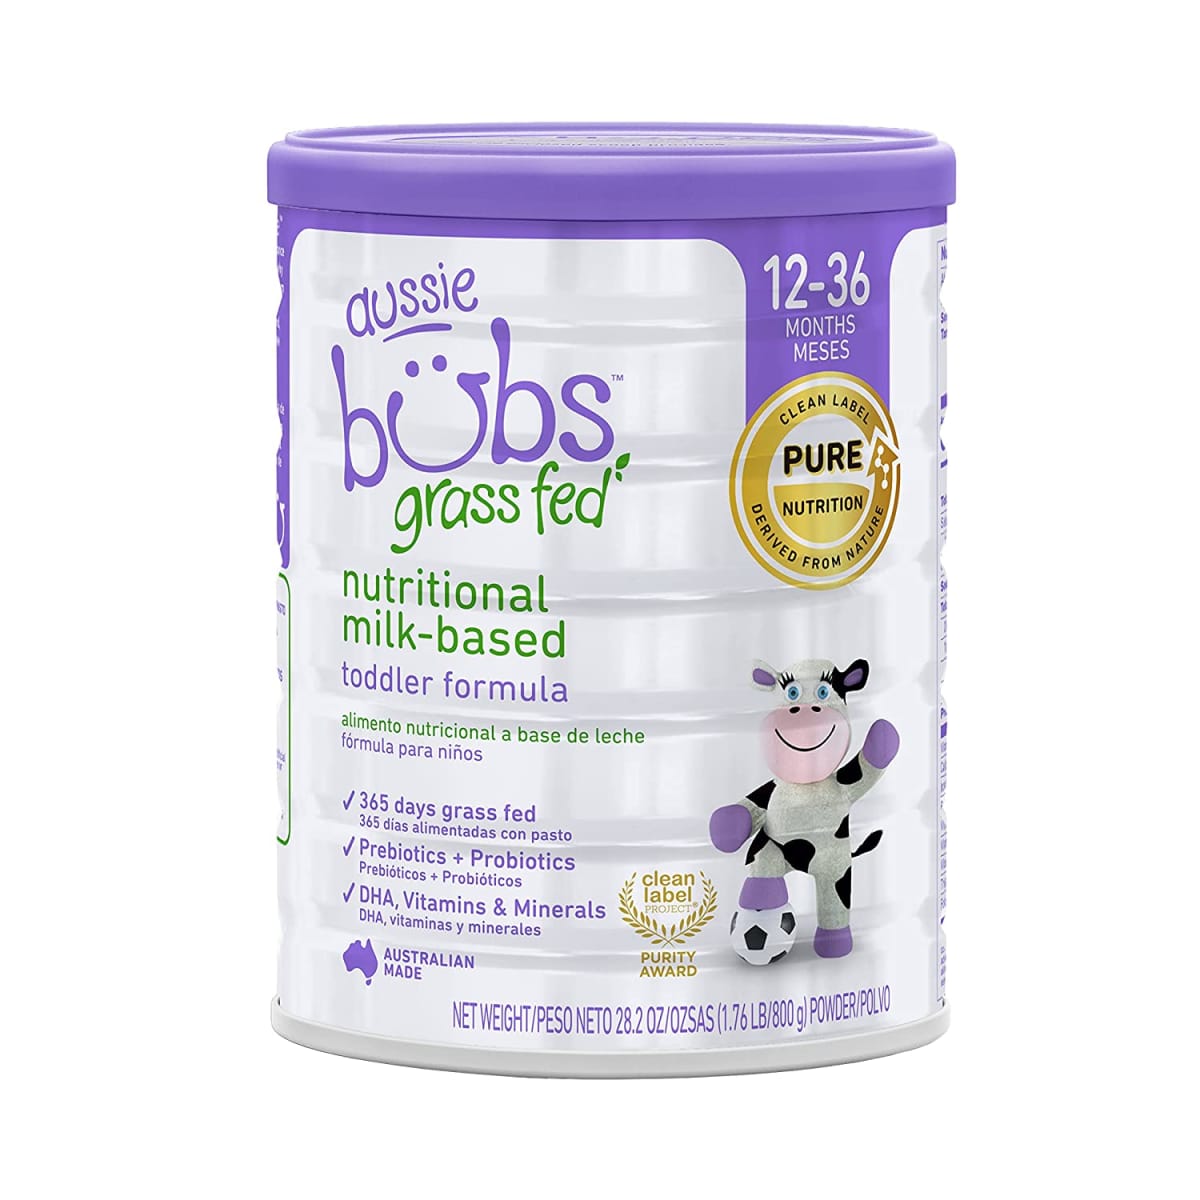 Grass Fed Nutritional Milk-based Toddler Formula